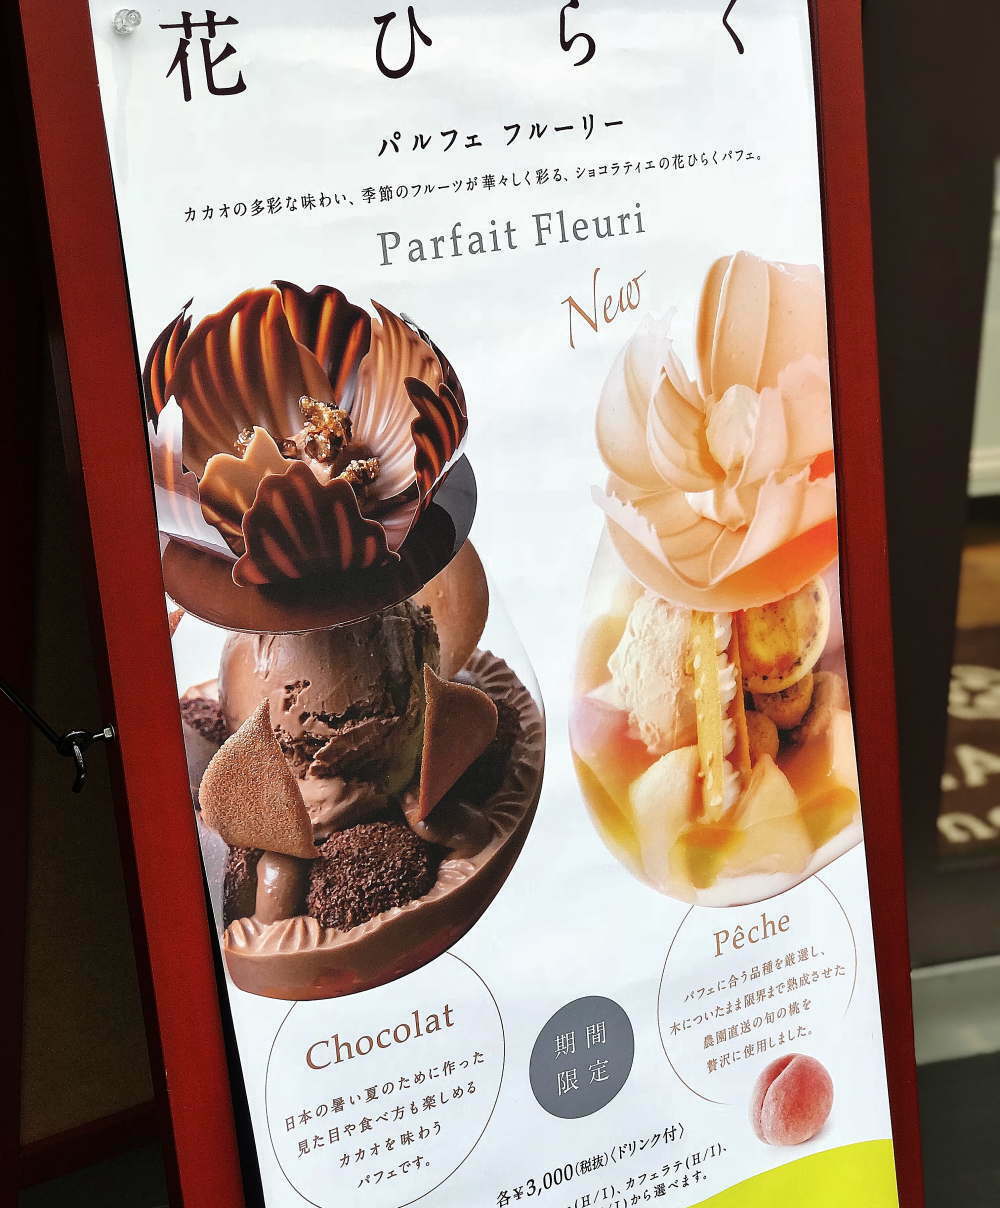 こちらは「パスカル・ル・ガック」のパフェの看板。ライターは「chocolat」を食べましたが、暑い時期はフルーツを使ったものが人気です。